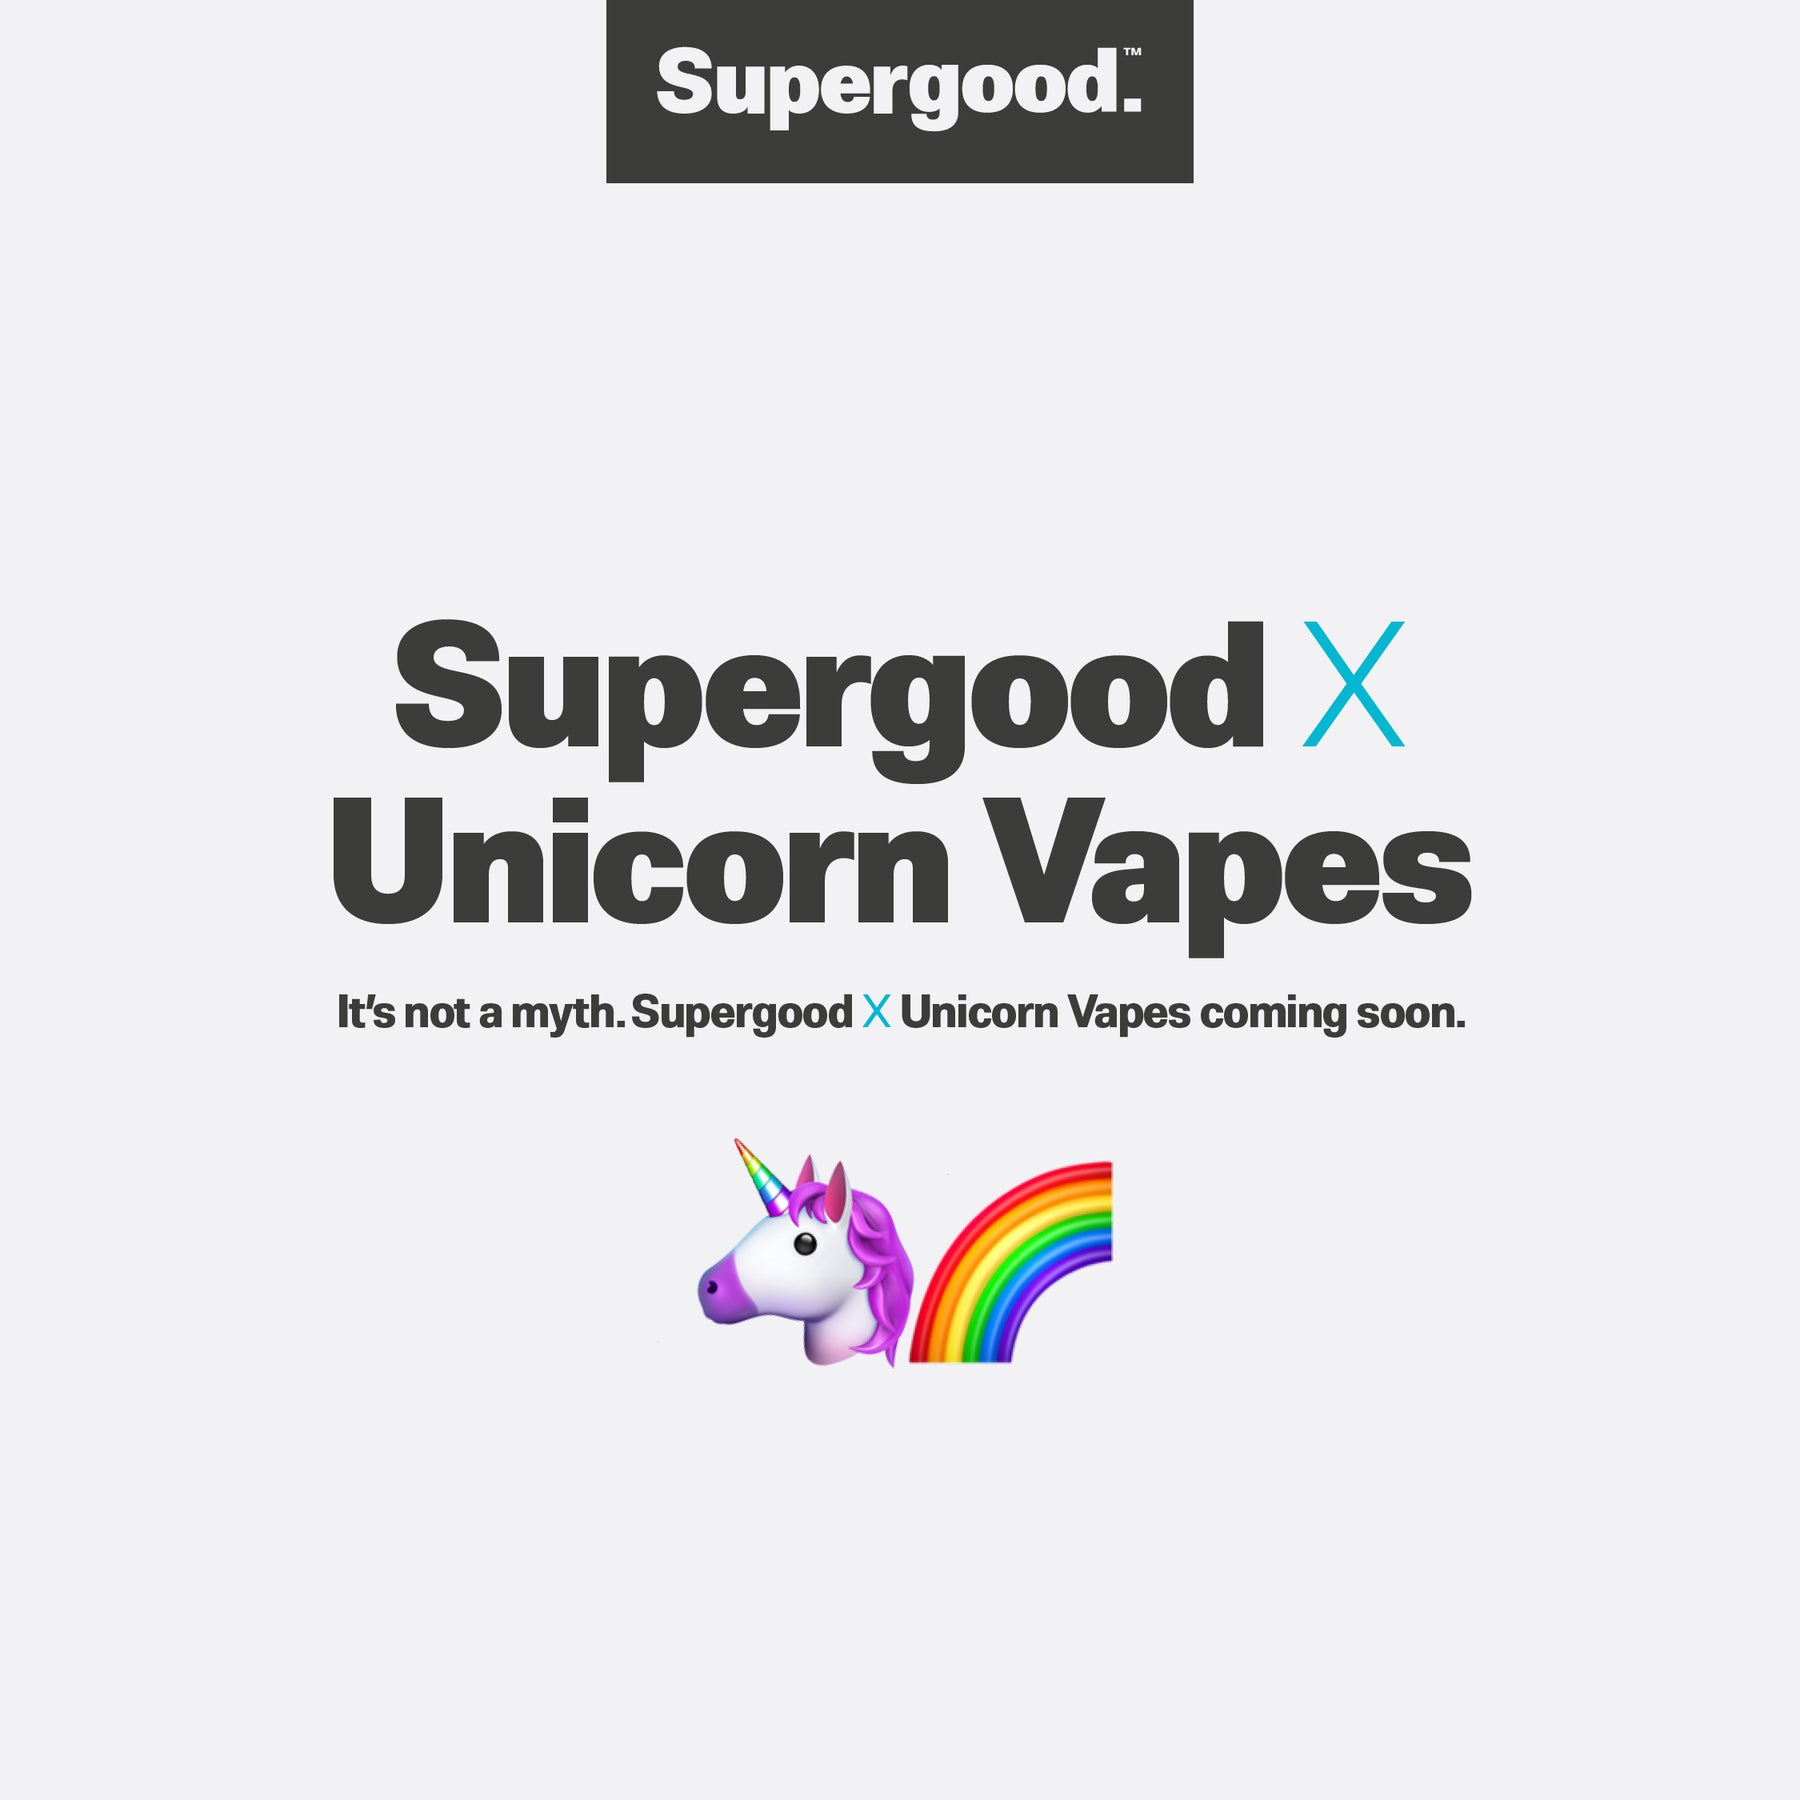 Supergood X Unicorn Vapes